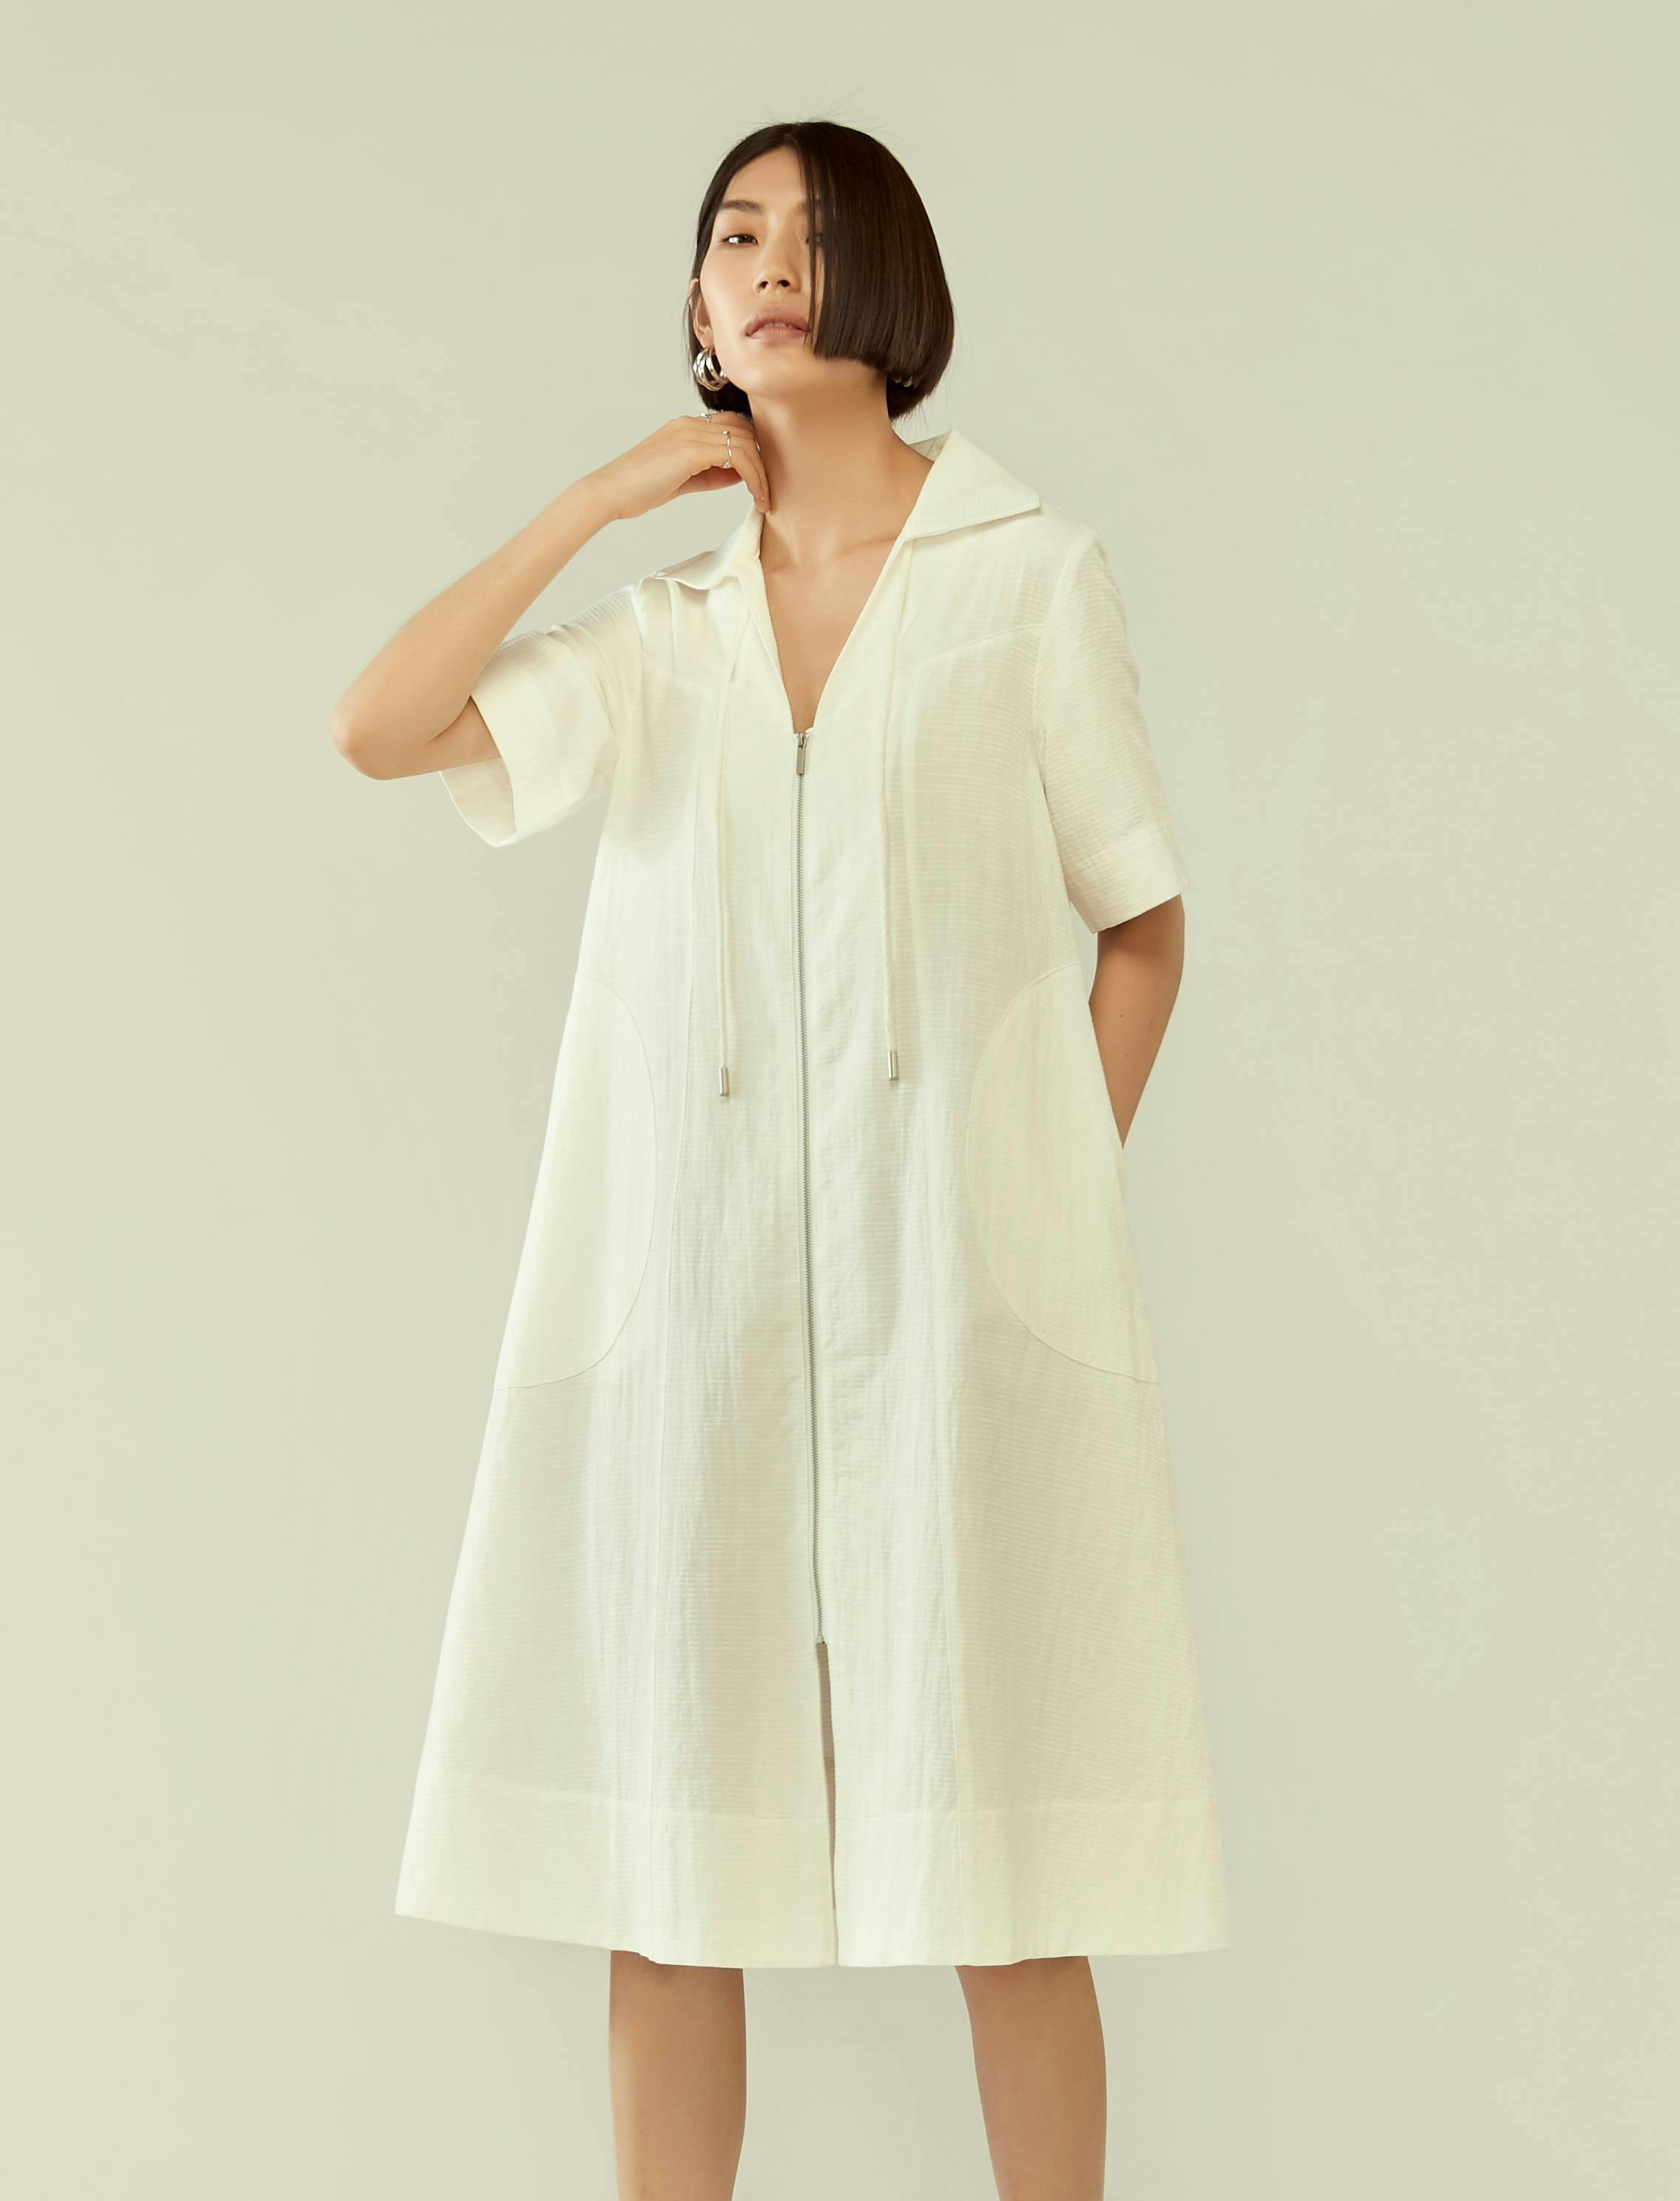 clothing apparel person human robe fashion